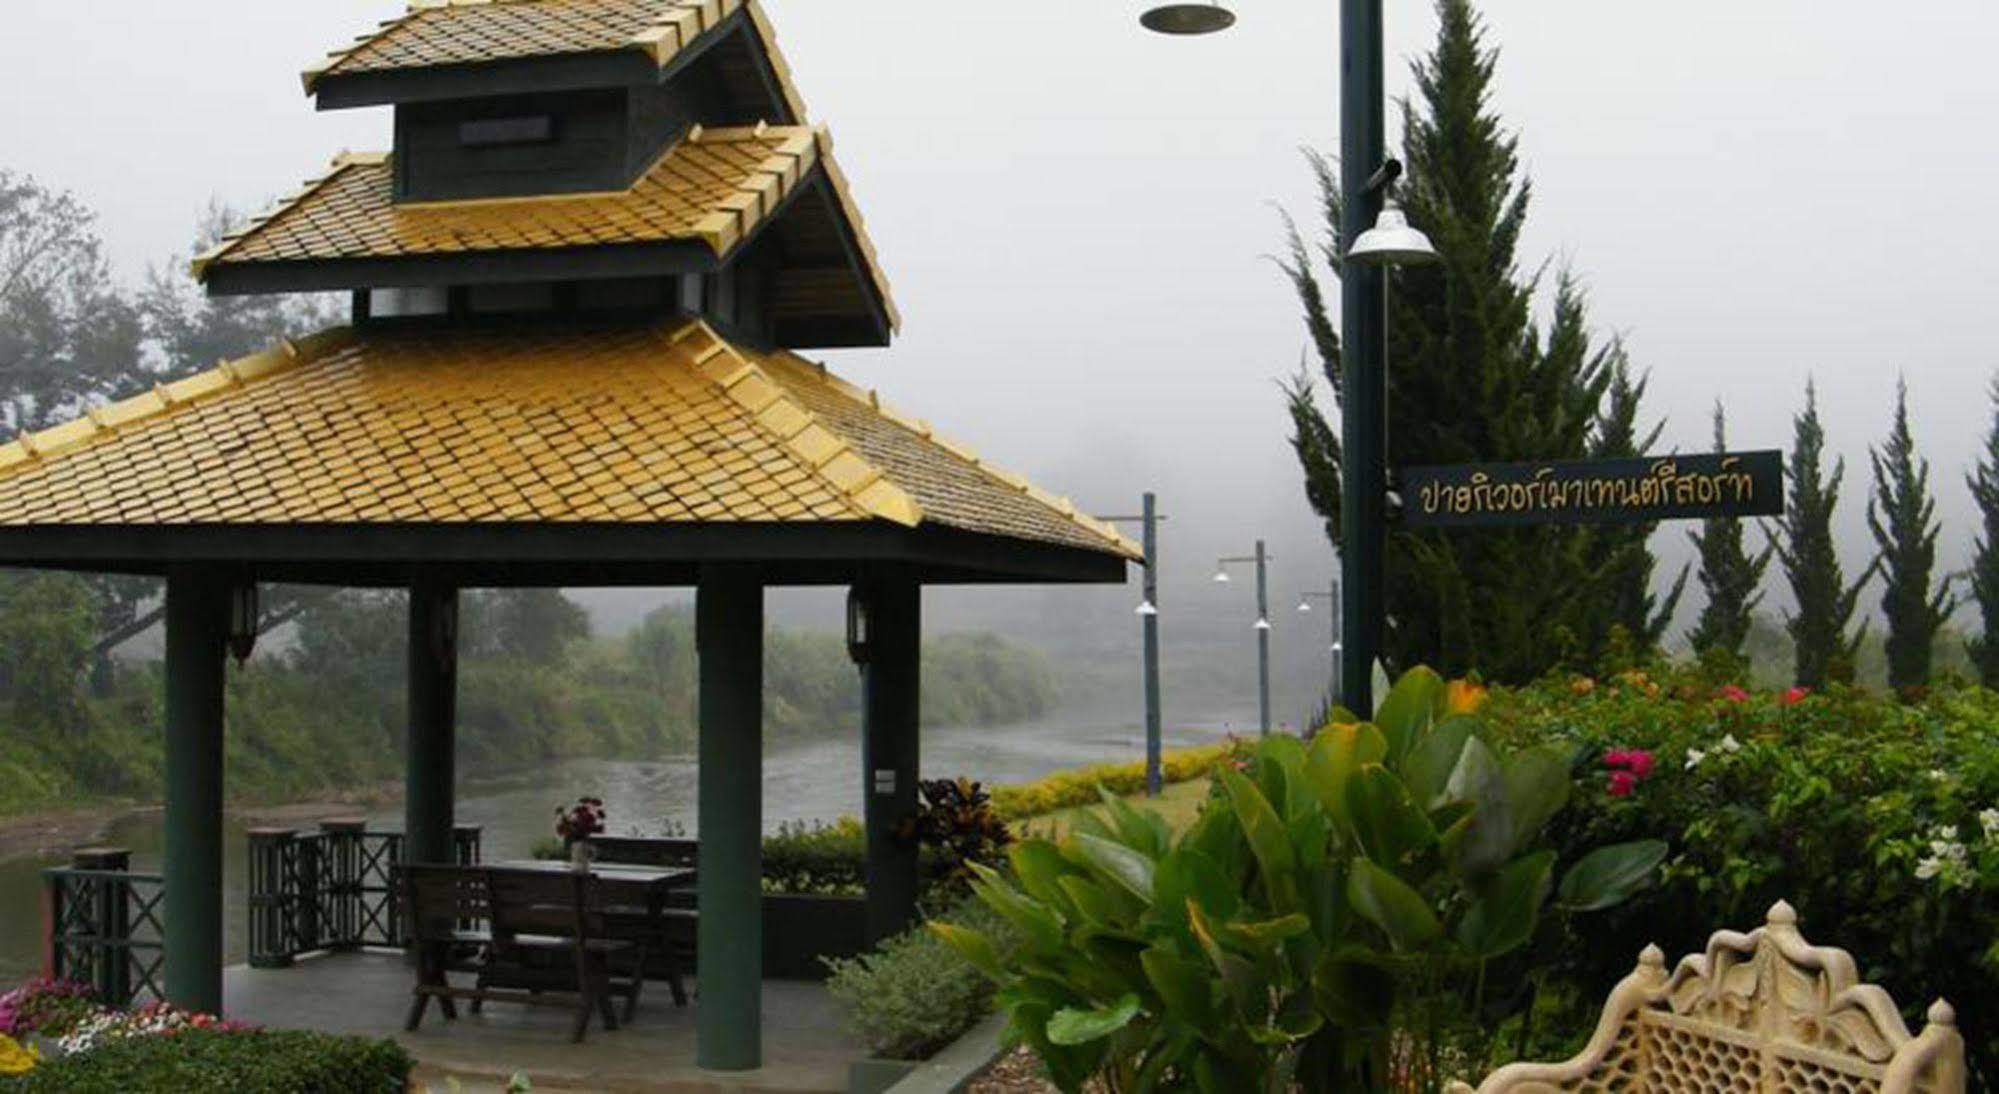 Pai River Mountain Resort Bagian luar foto